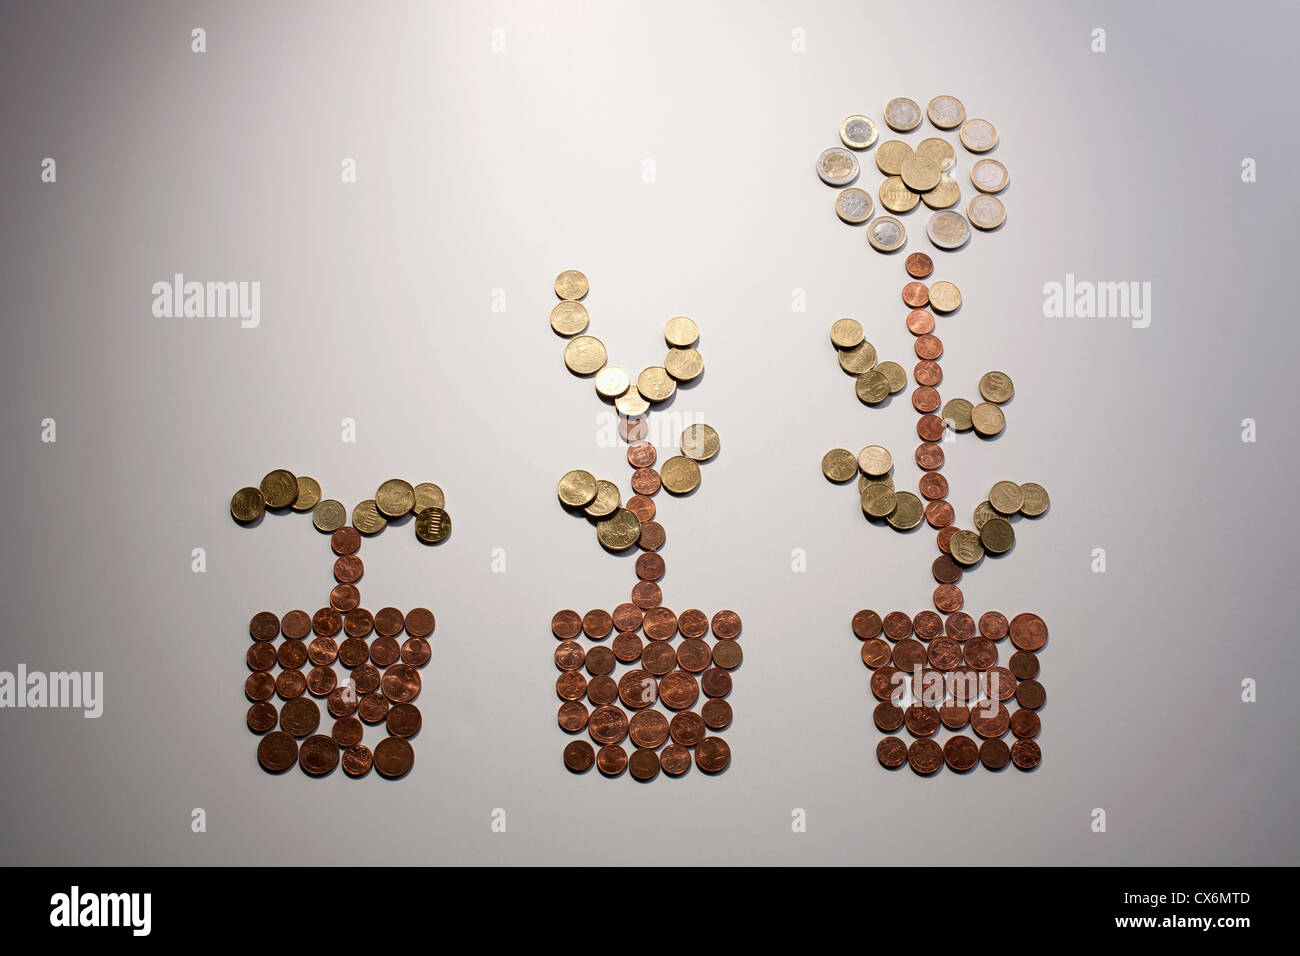 Europäischen Union Münzen angeordnet, um die Form einer Blume in drei Stadien des Wachstums Stockfoto